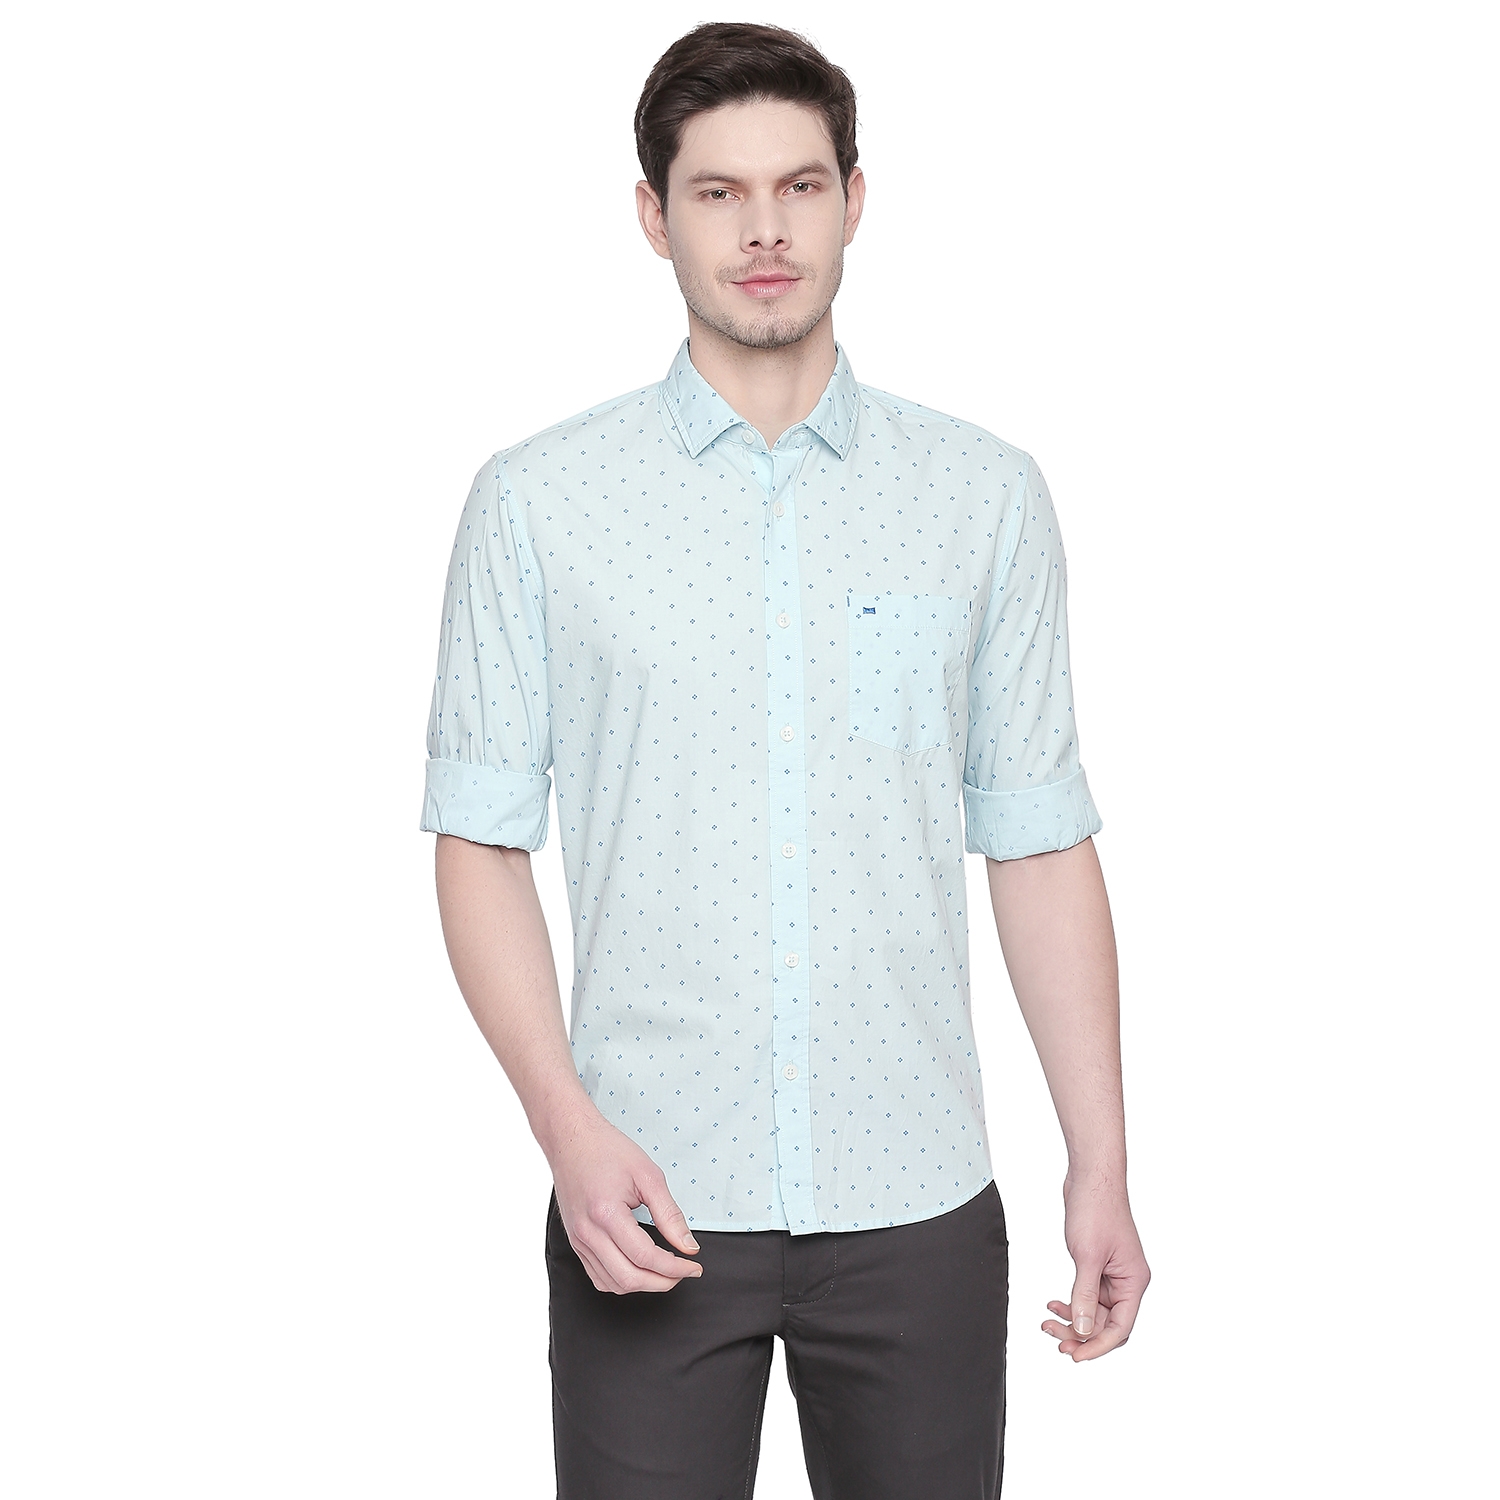 BASICS | Basics Slim Fit Sky Blue Printed Shirt-21BSH47858